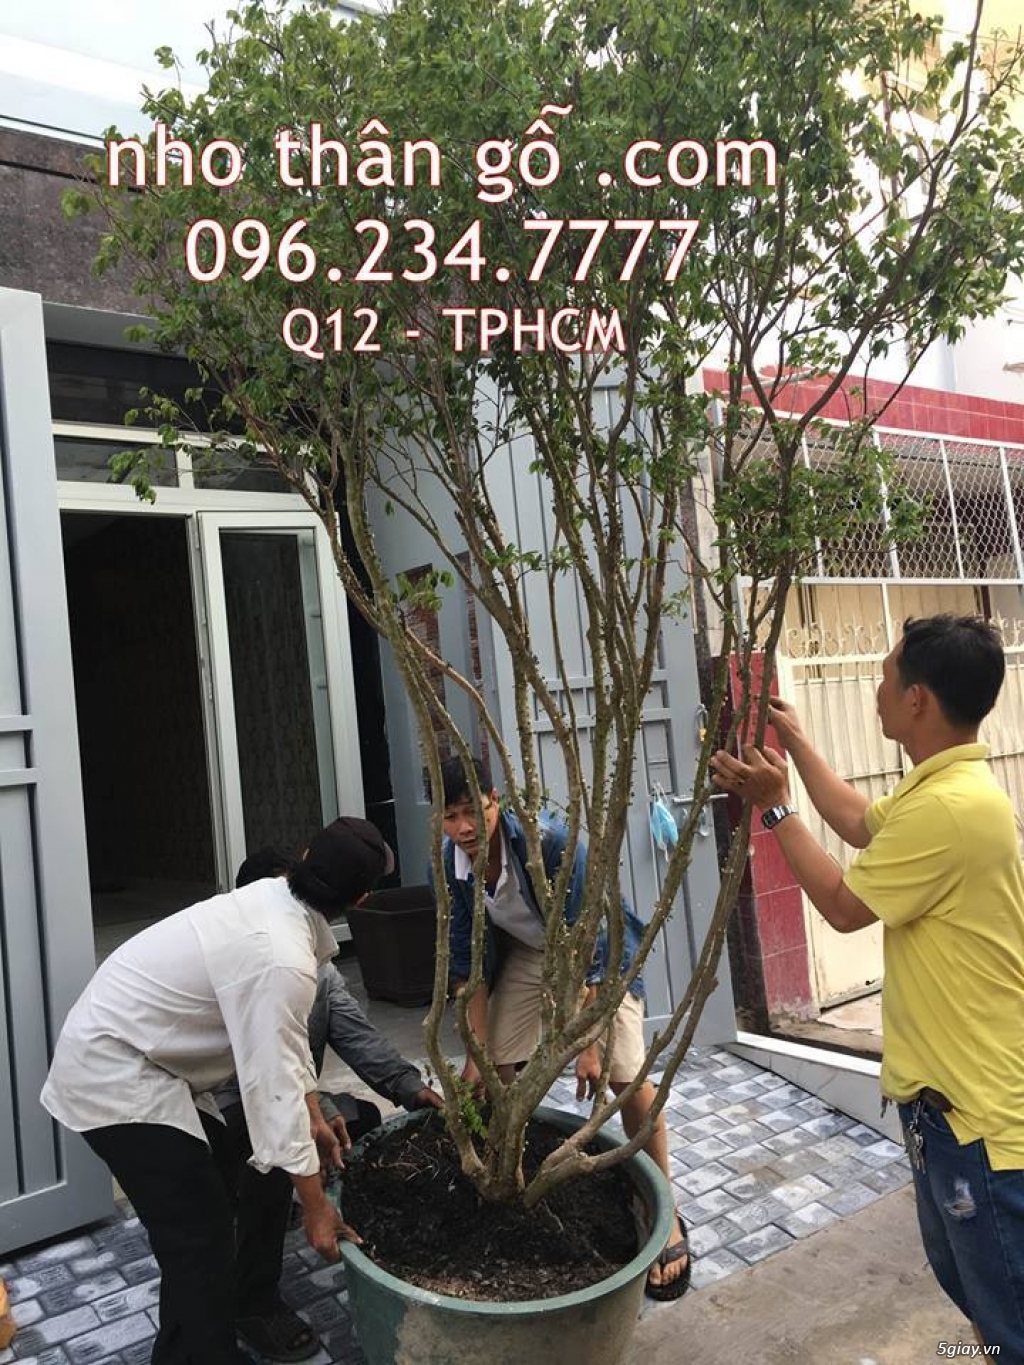 Mua bán cây Nho Thân Gỗ TPHCM - 3